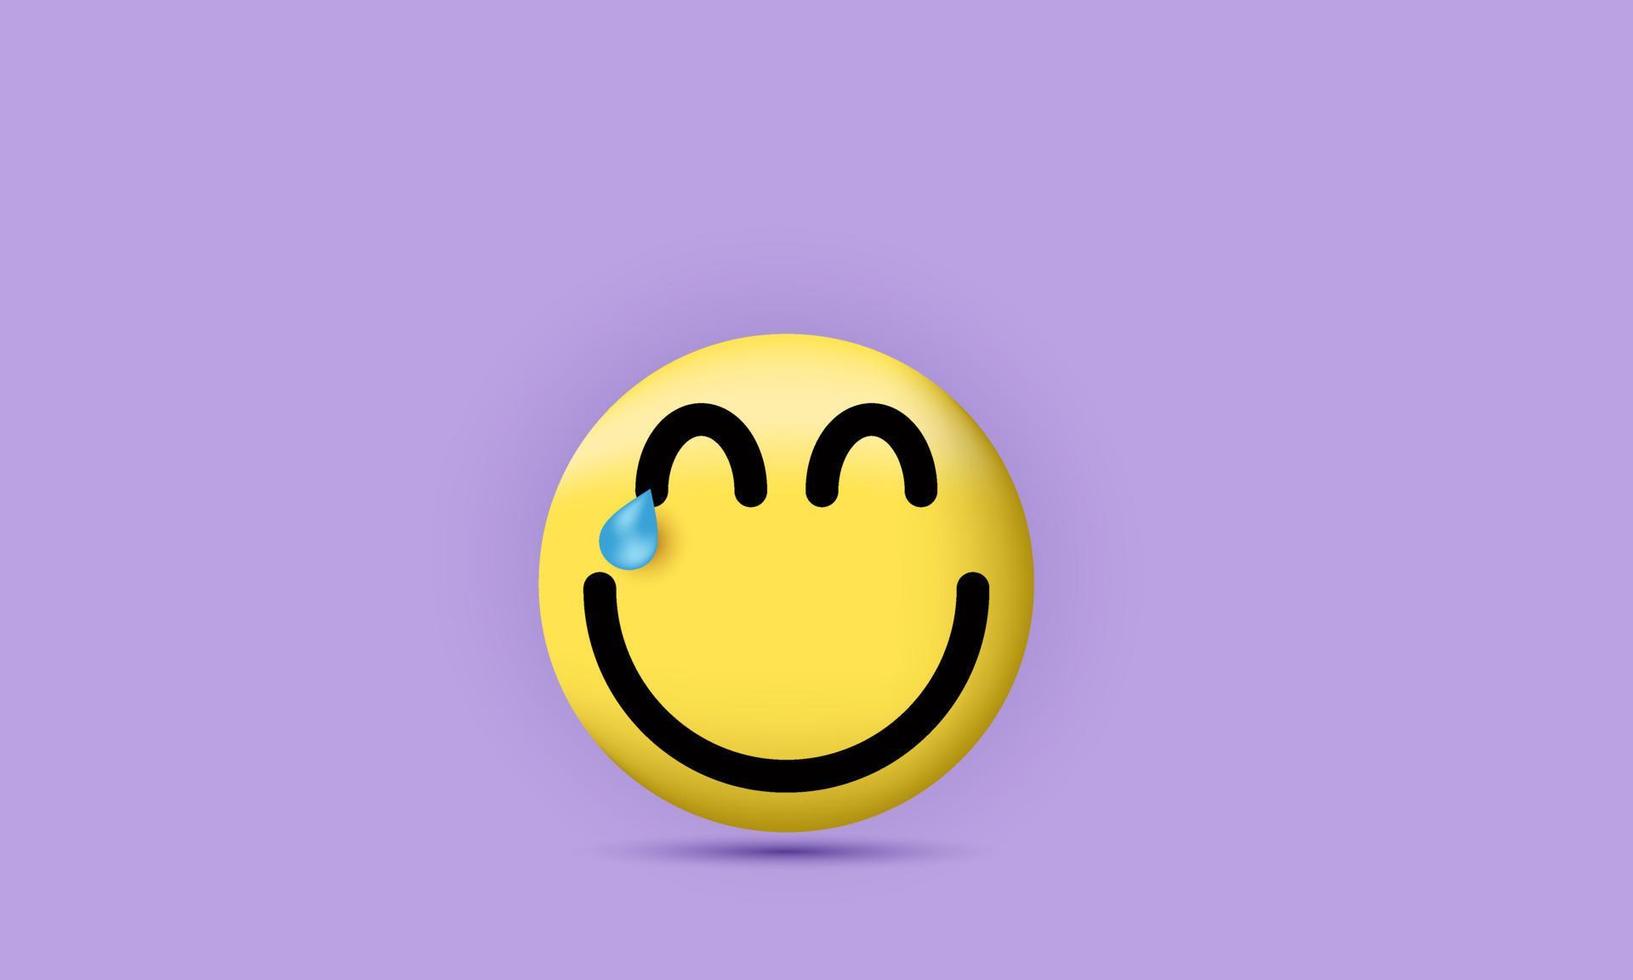 3D emoji uttryckssymbol lyckligt ansikte uttryck sociala medier vektorillustration vektor